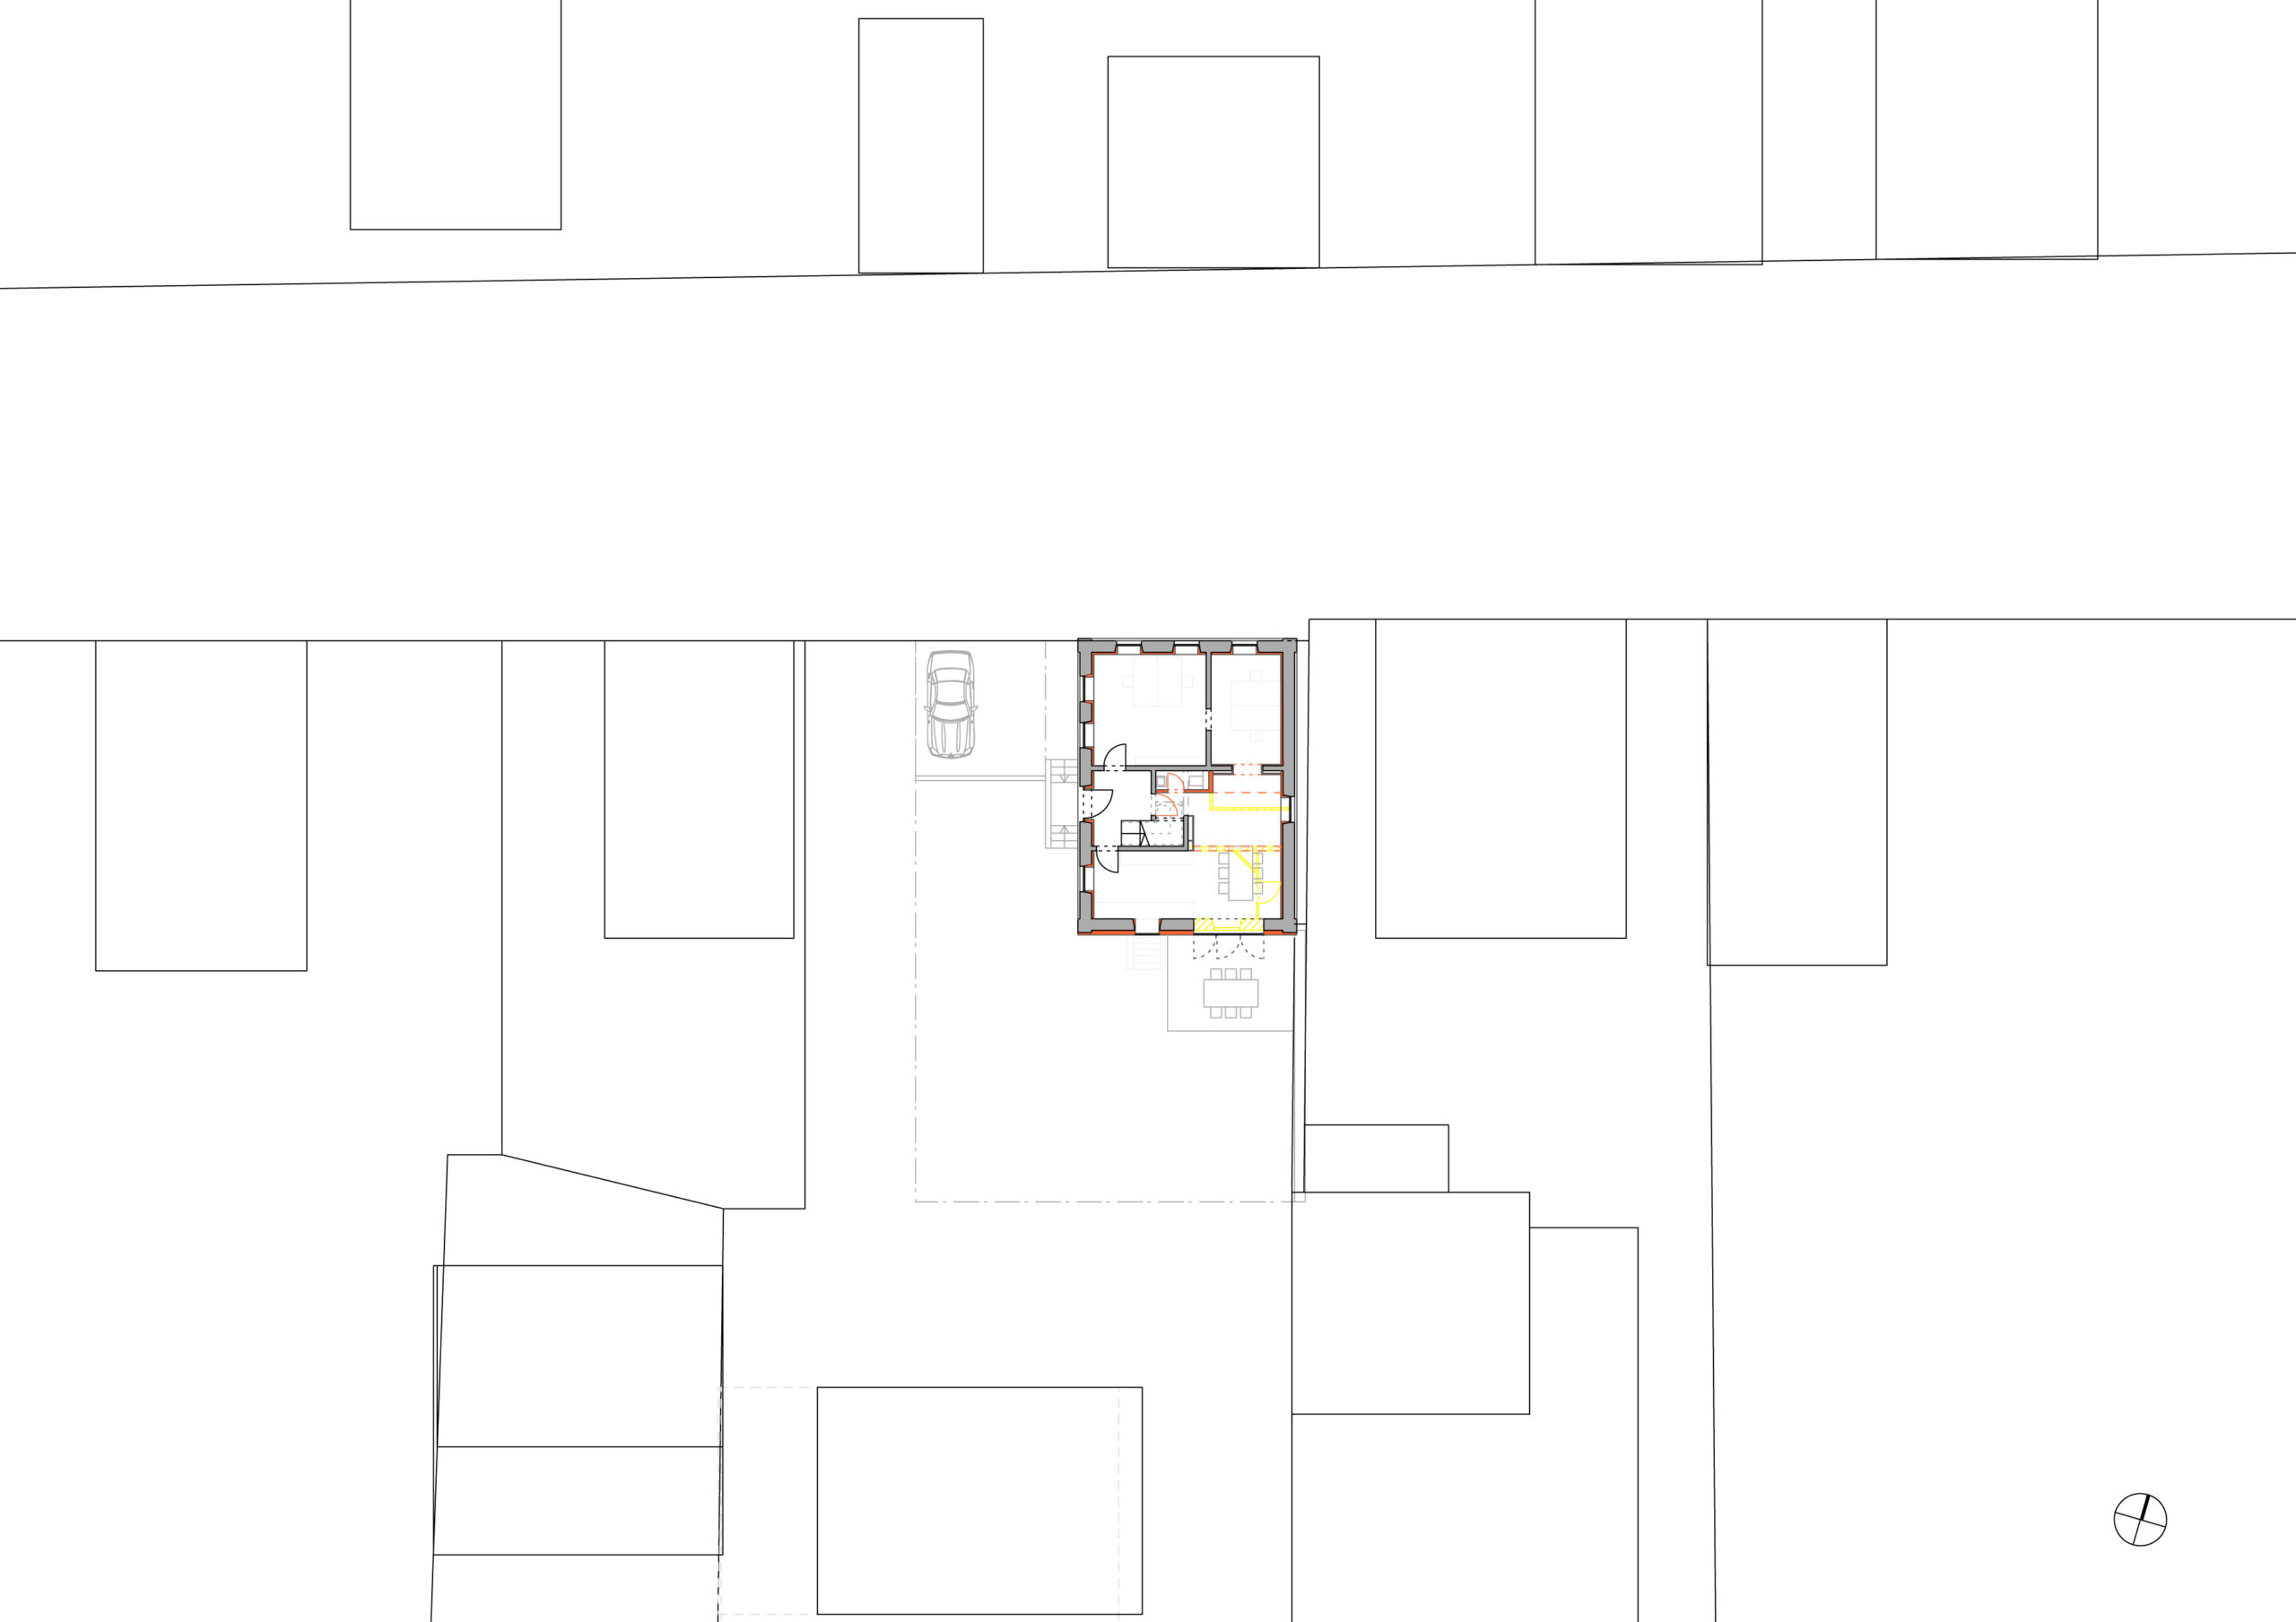 052_Wohnhaus Tovar mit Büro_Lageplan_FFM-ARCHITEKTEN